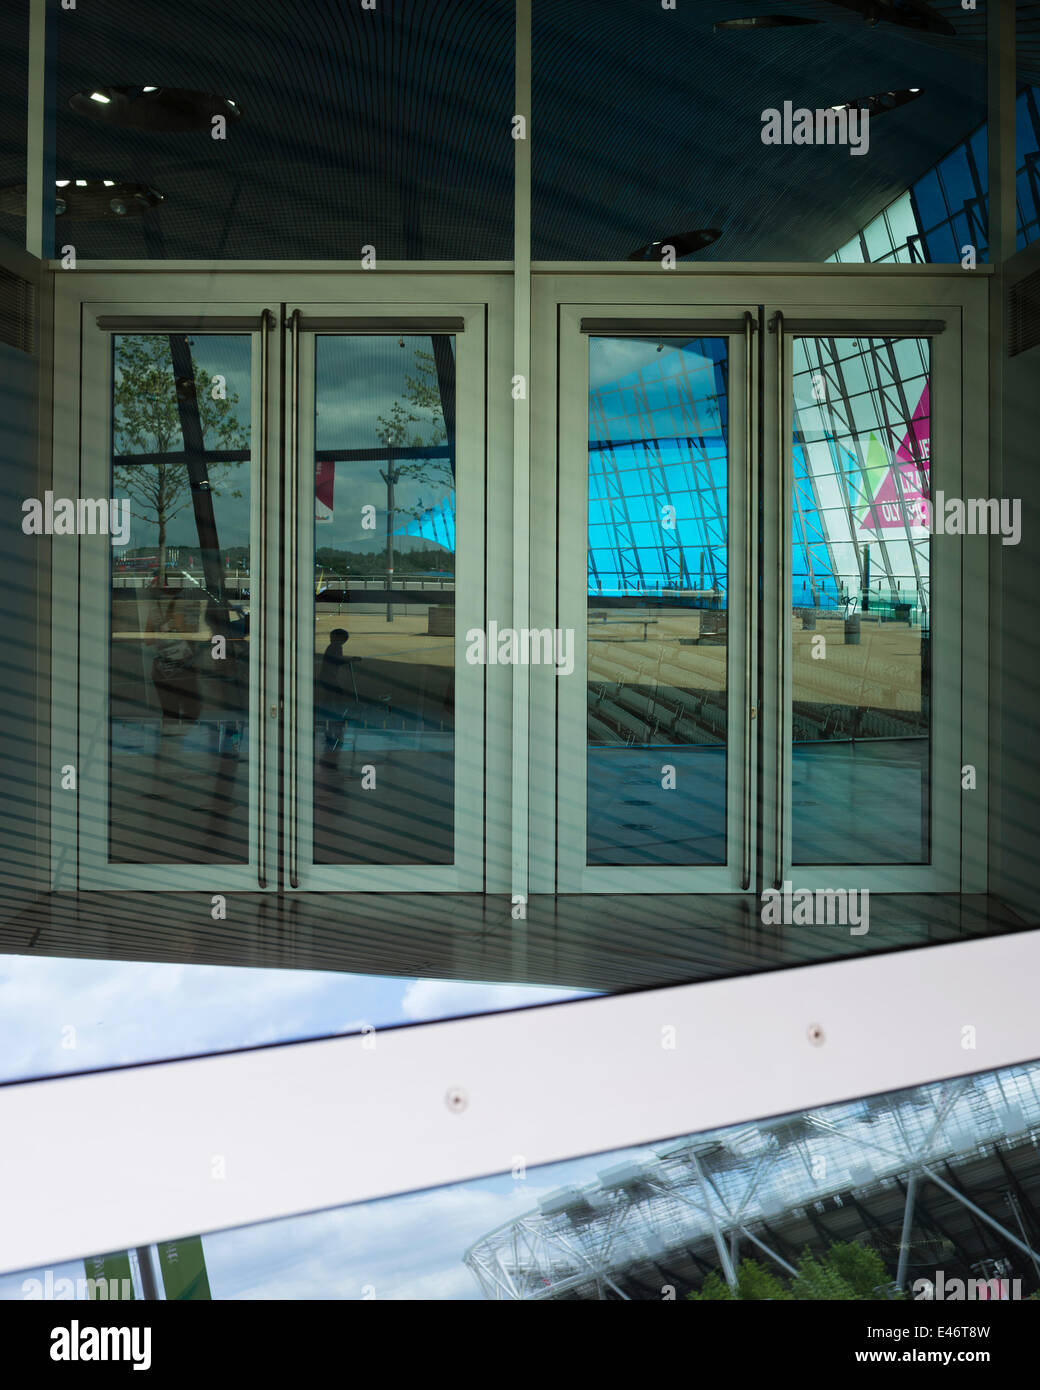 London-Wassersport-Zentrum, nach die spielen 2012 in London, Vereinigtes Königreich. Architekt: Zaha Hadid Architects, 2014. Reflexionen in gla Stockfoto